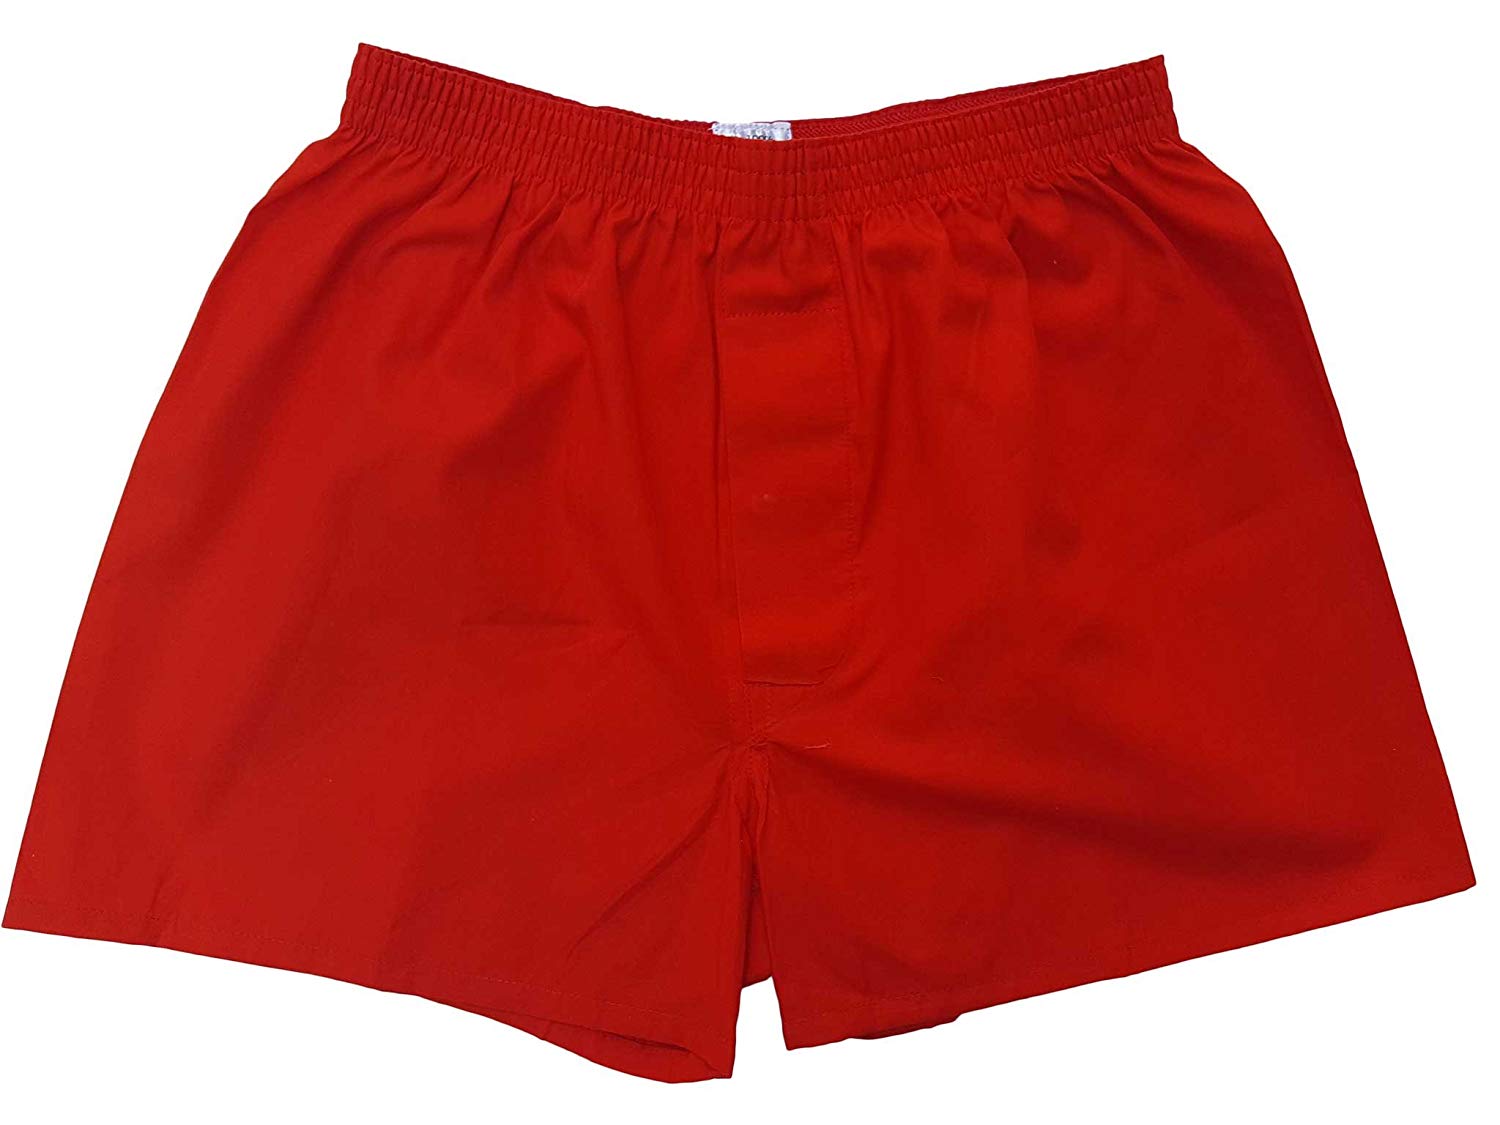 赤色 トランクス 赤 日本製 6枚 セット 父の日 ギフト 誕生日 プレゼント 福袋 【送料無料】 還暦祝い メンズ 下着 男性 M L LL 綿100% 前開き 赤パンツ